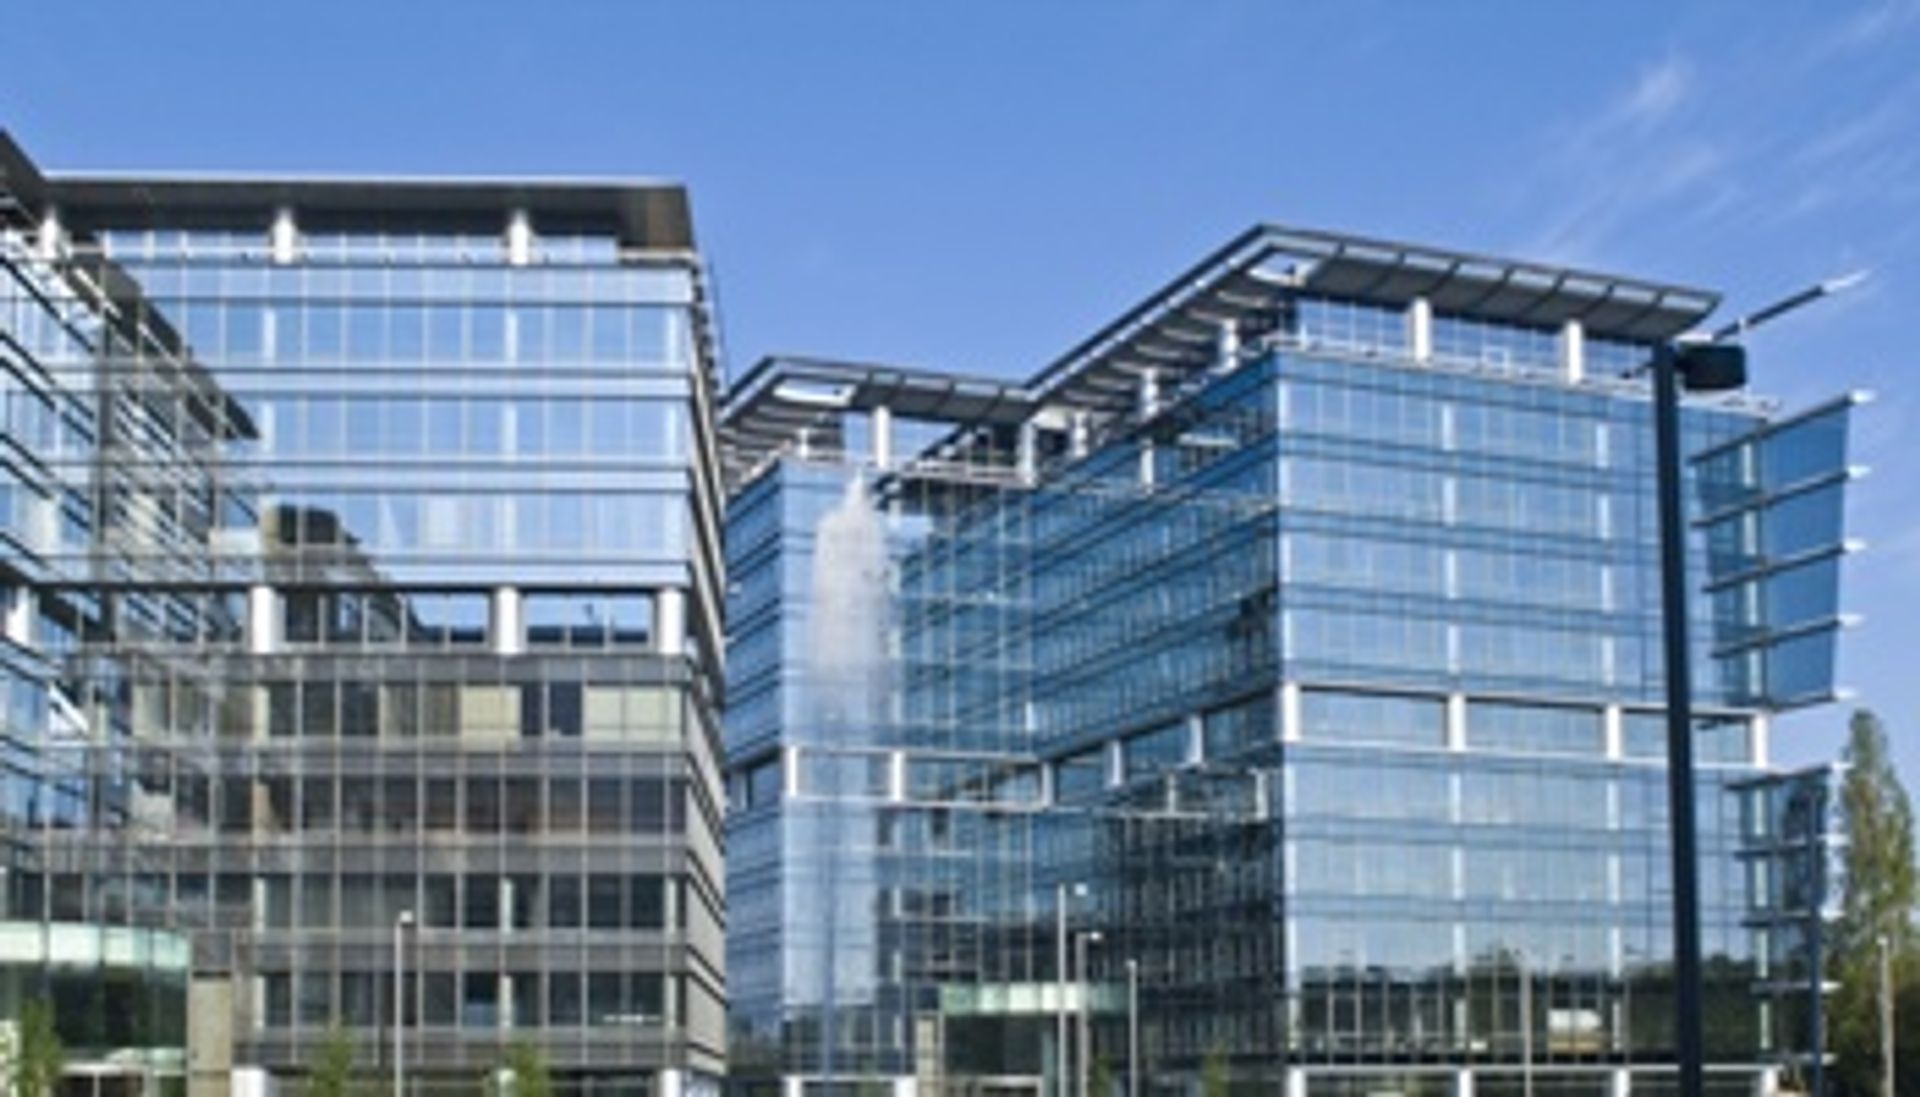  Prima Poland podpisuje umowę najmu powierzchni w warszawskim kompleksie biurowym Marynarska Business Park